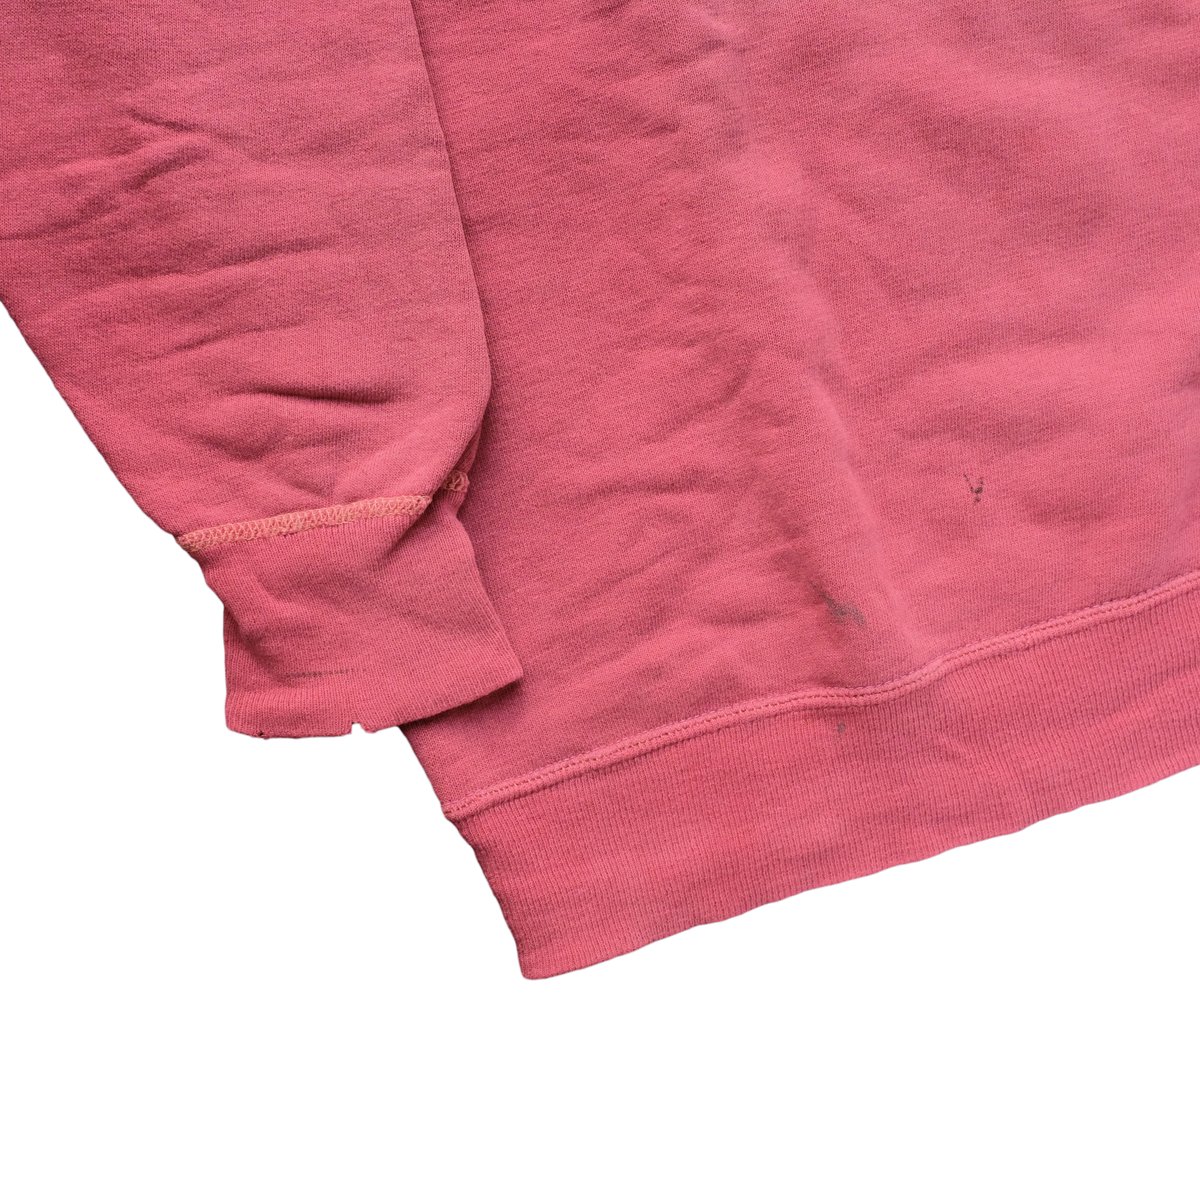 Image of Vintage Sunfaded Flocked Print Sweatshirt